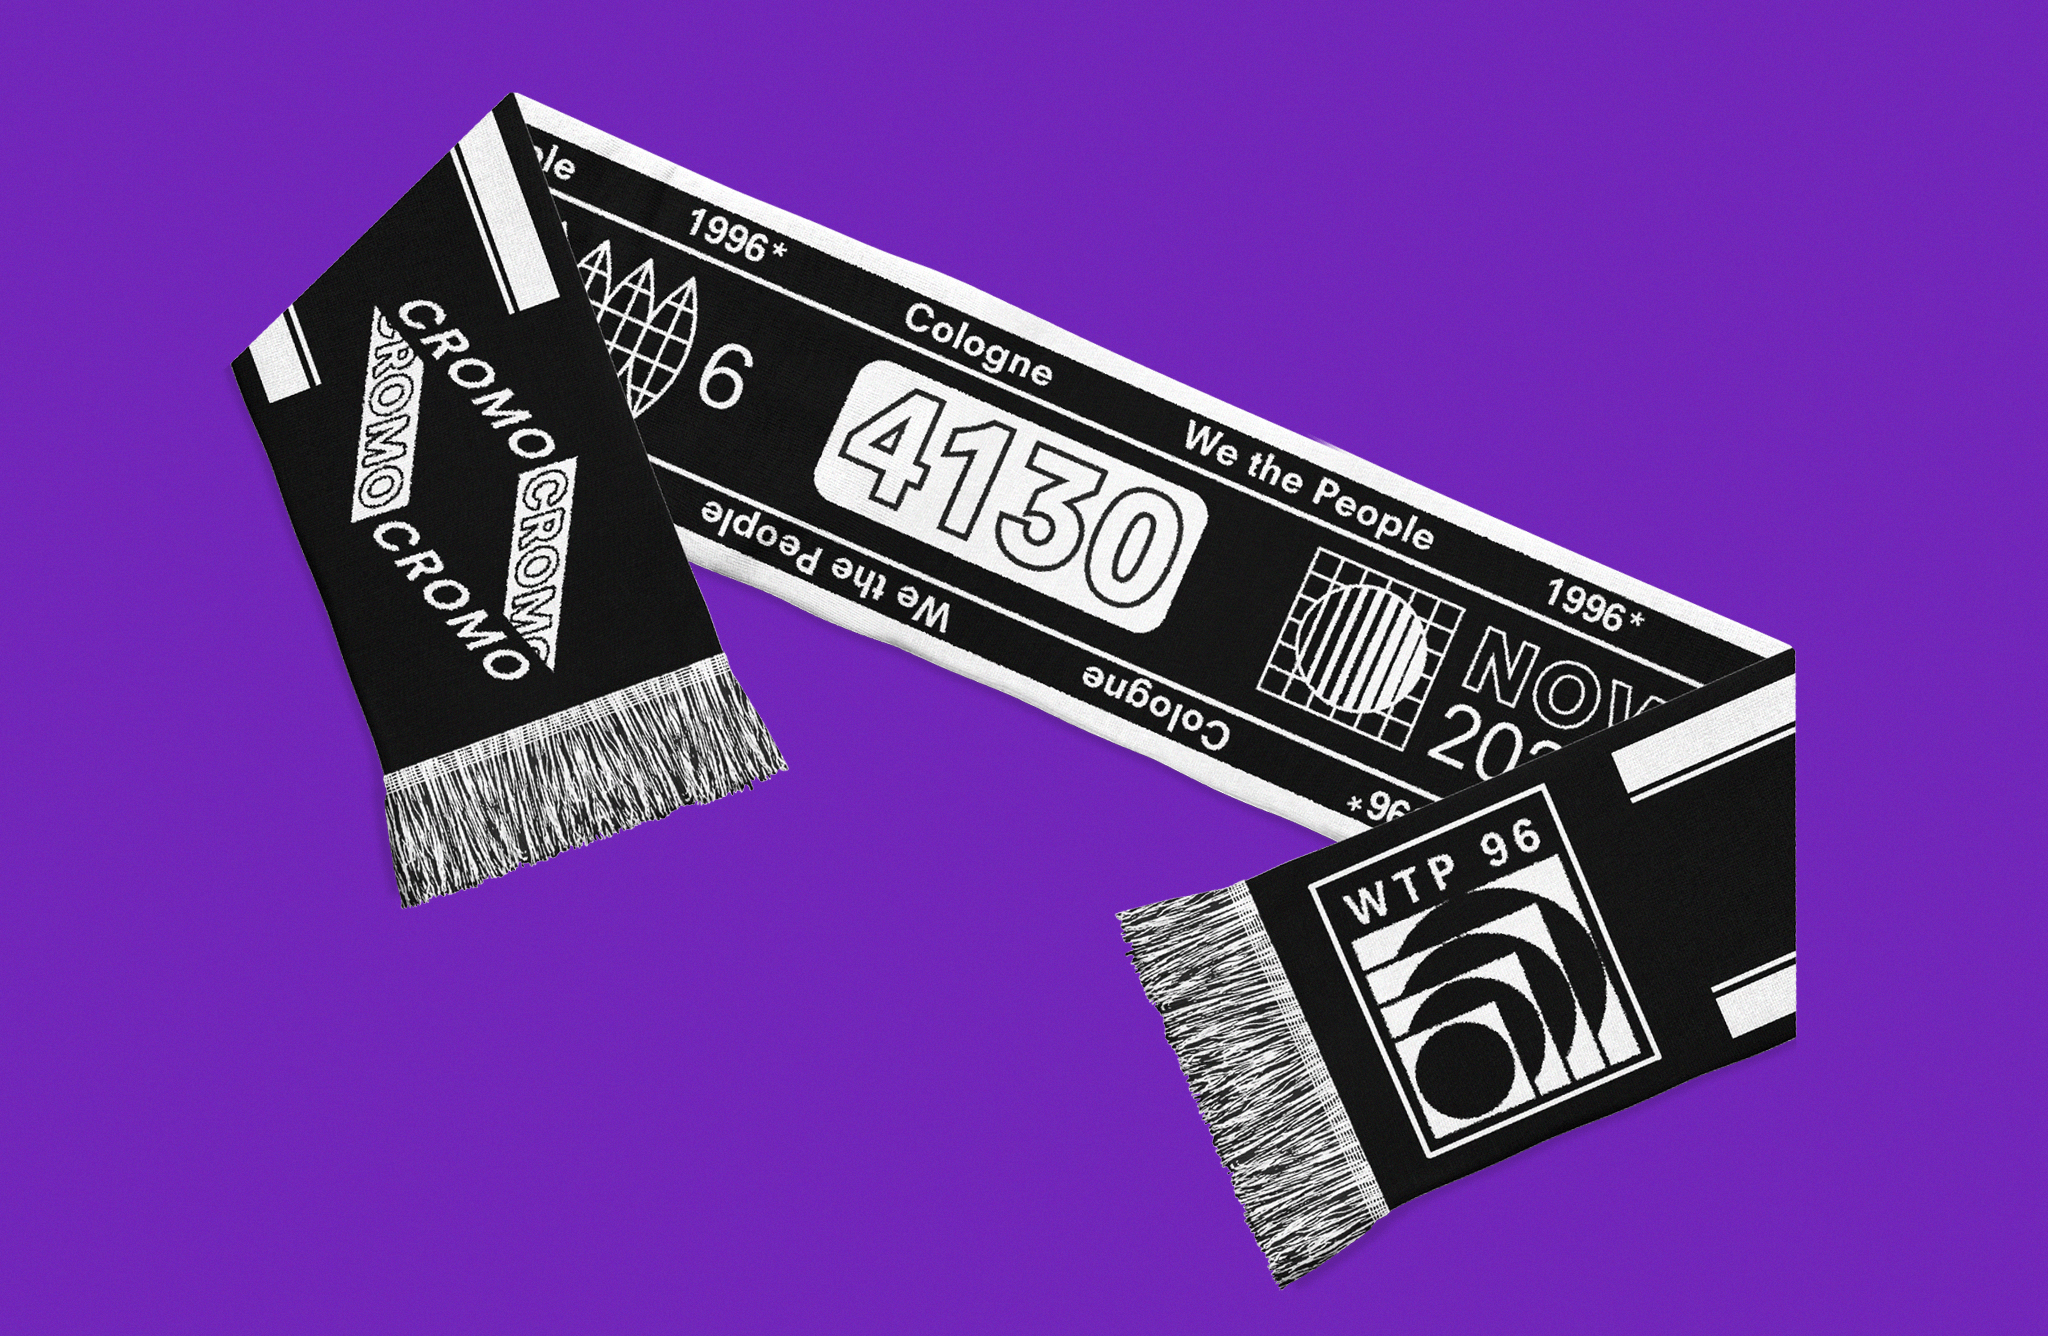 Schwarzer Schal mit weißter Grafik auf lila Grund / Black scarf with white graphic on purple background